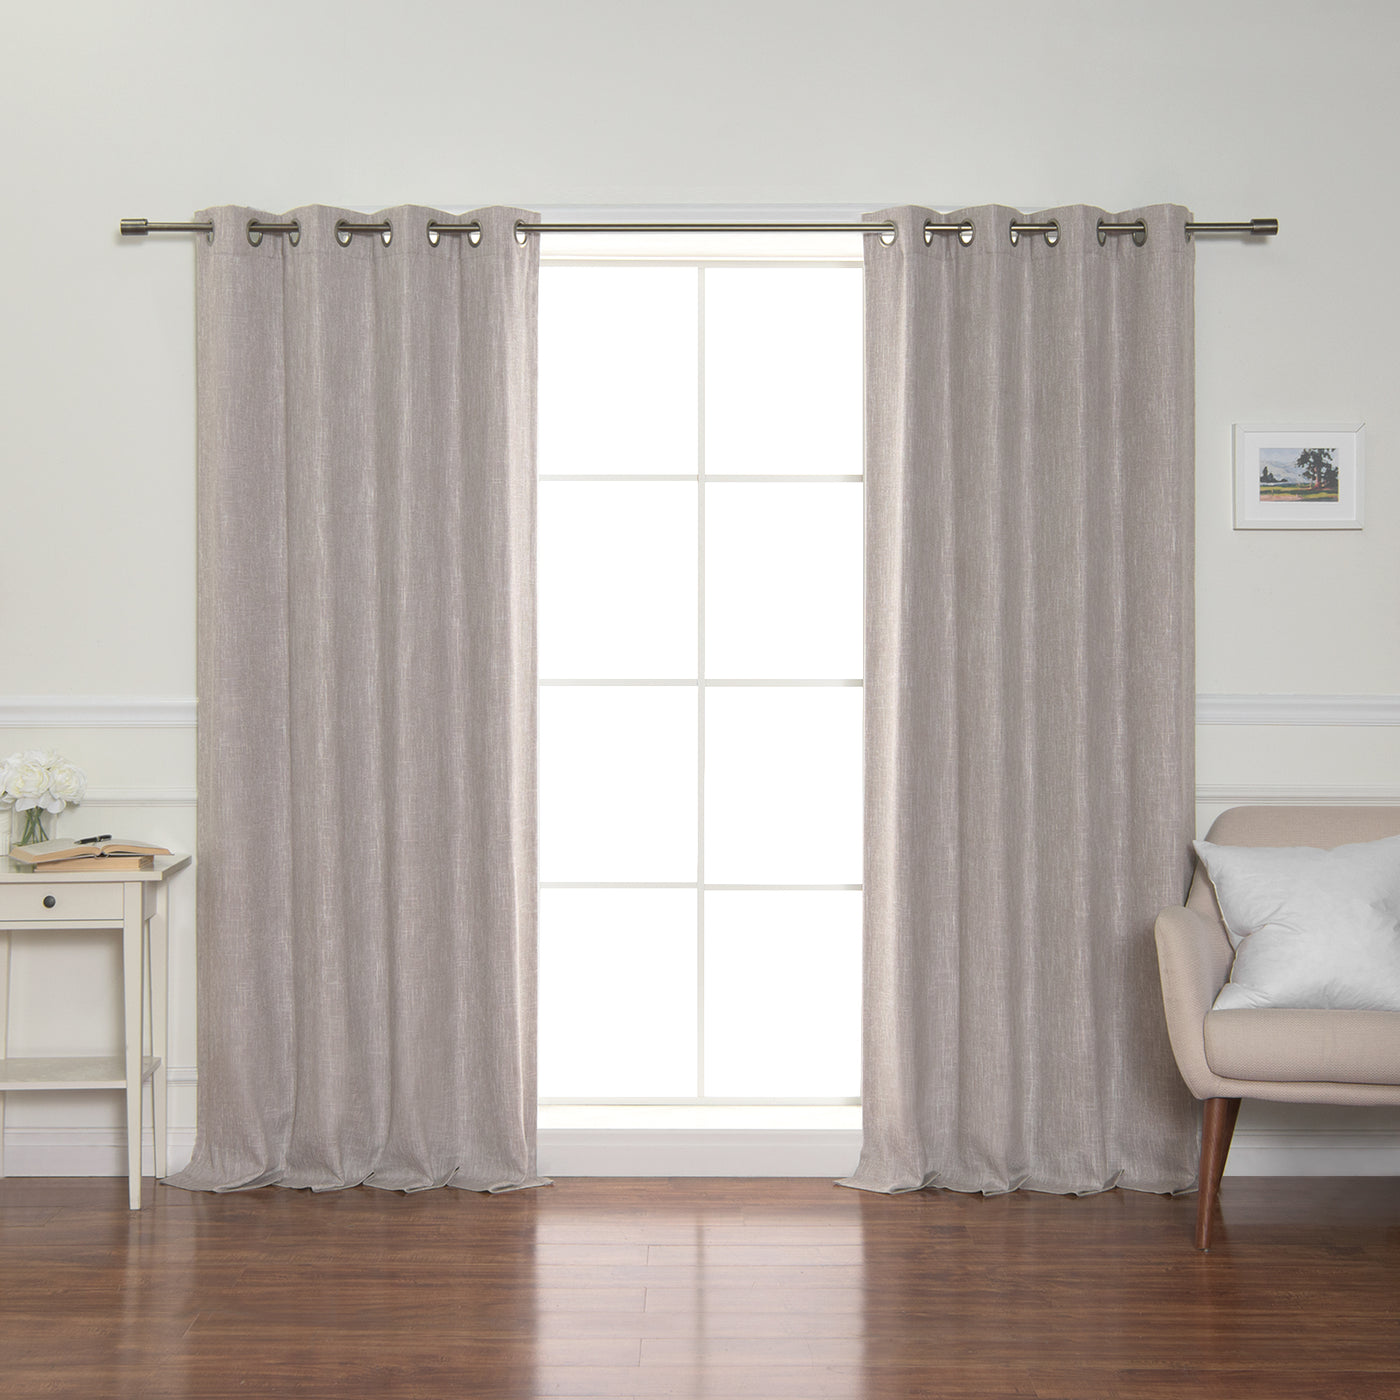 Linen-Look Grommet Blackout Curtains